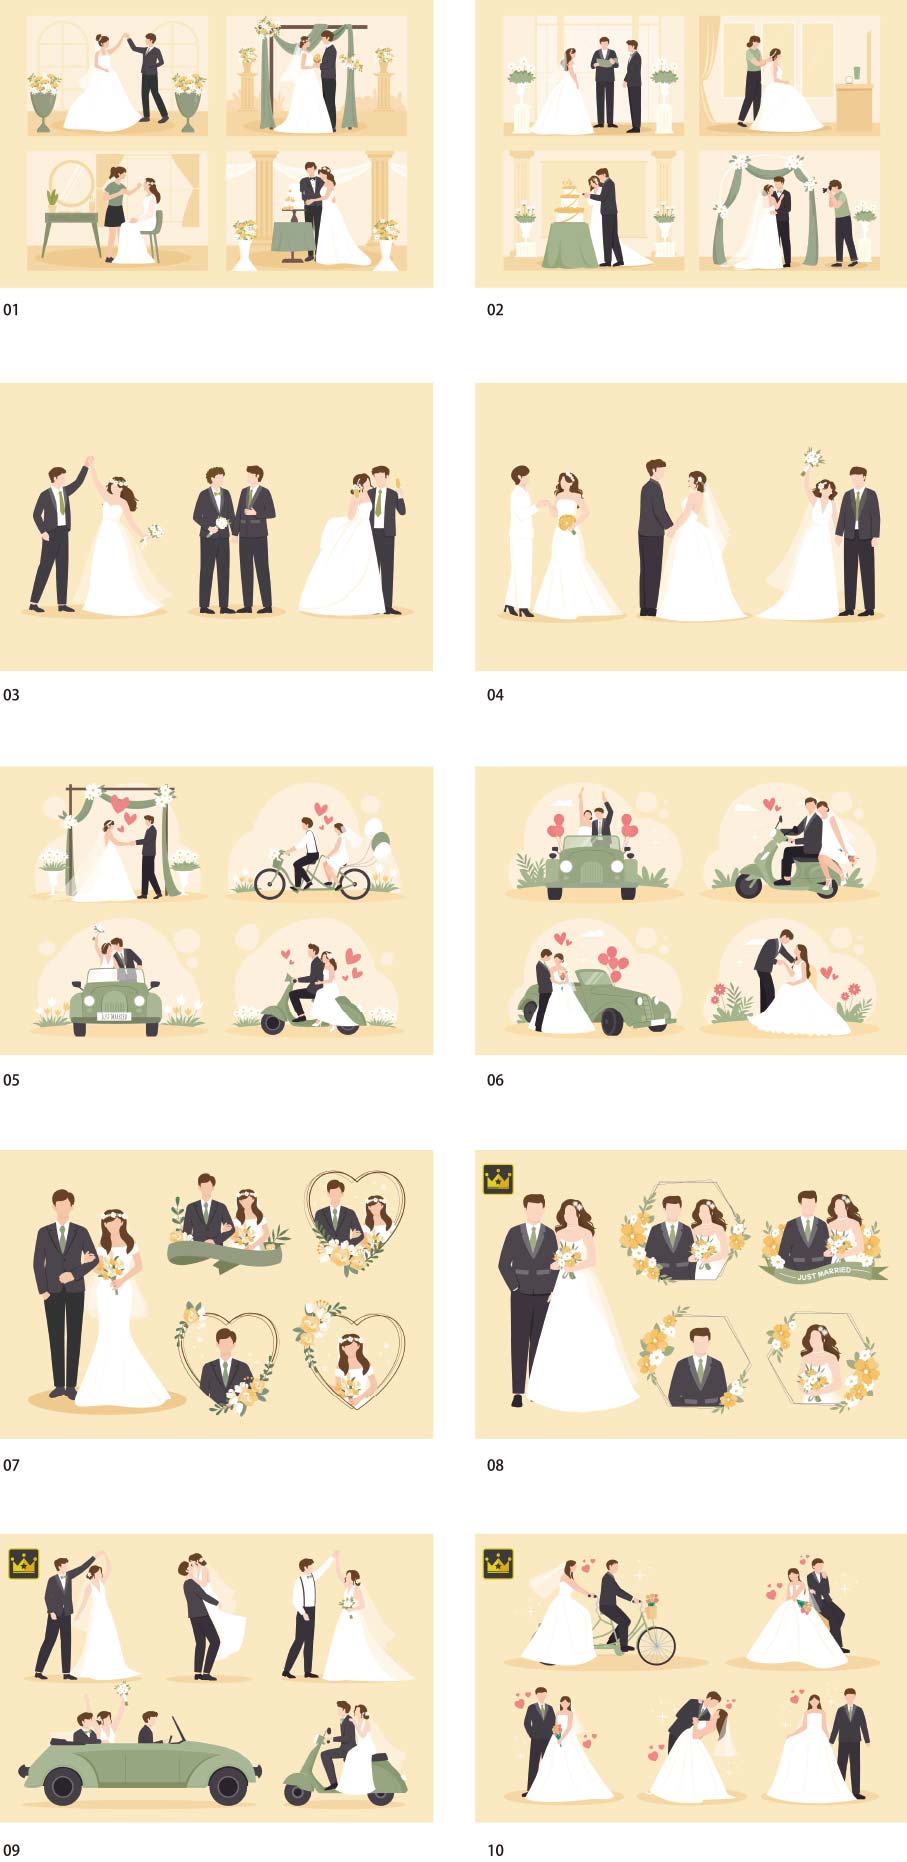 รวมภาพประกอบงานแต่งงาน vol.2